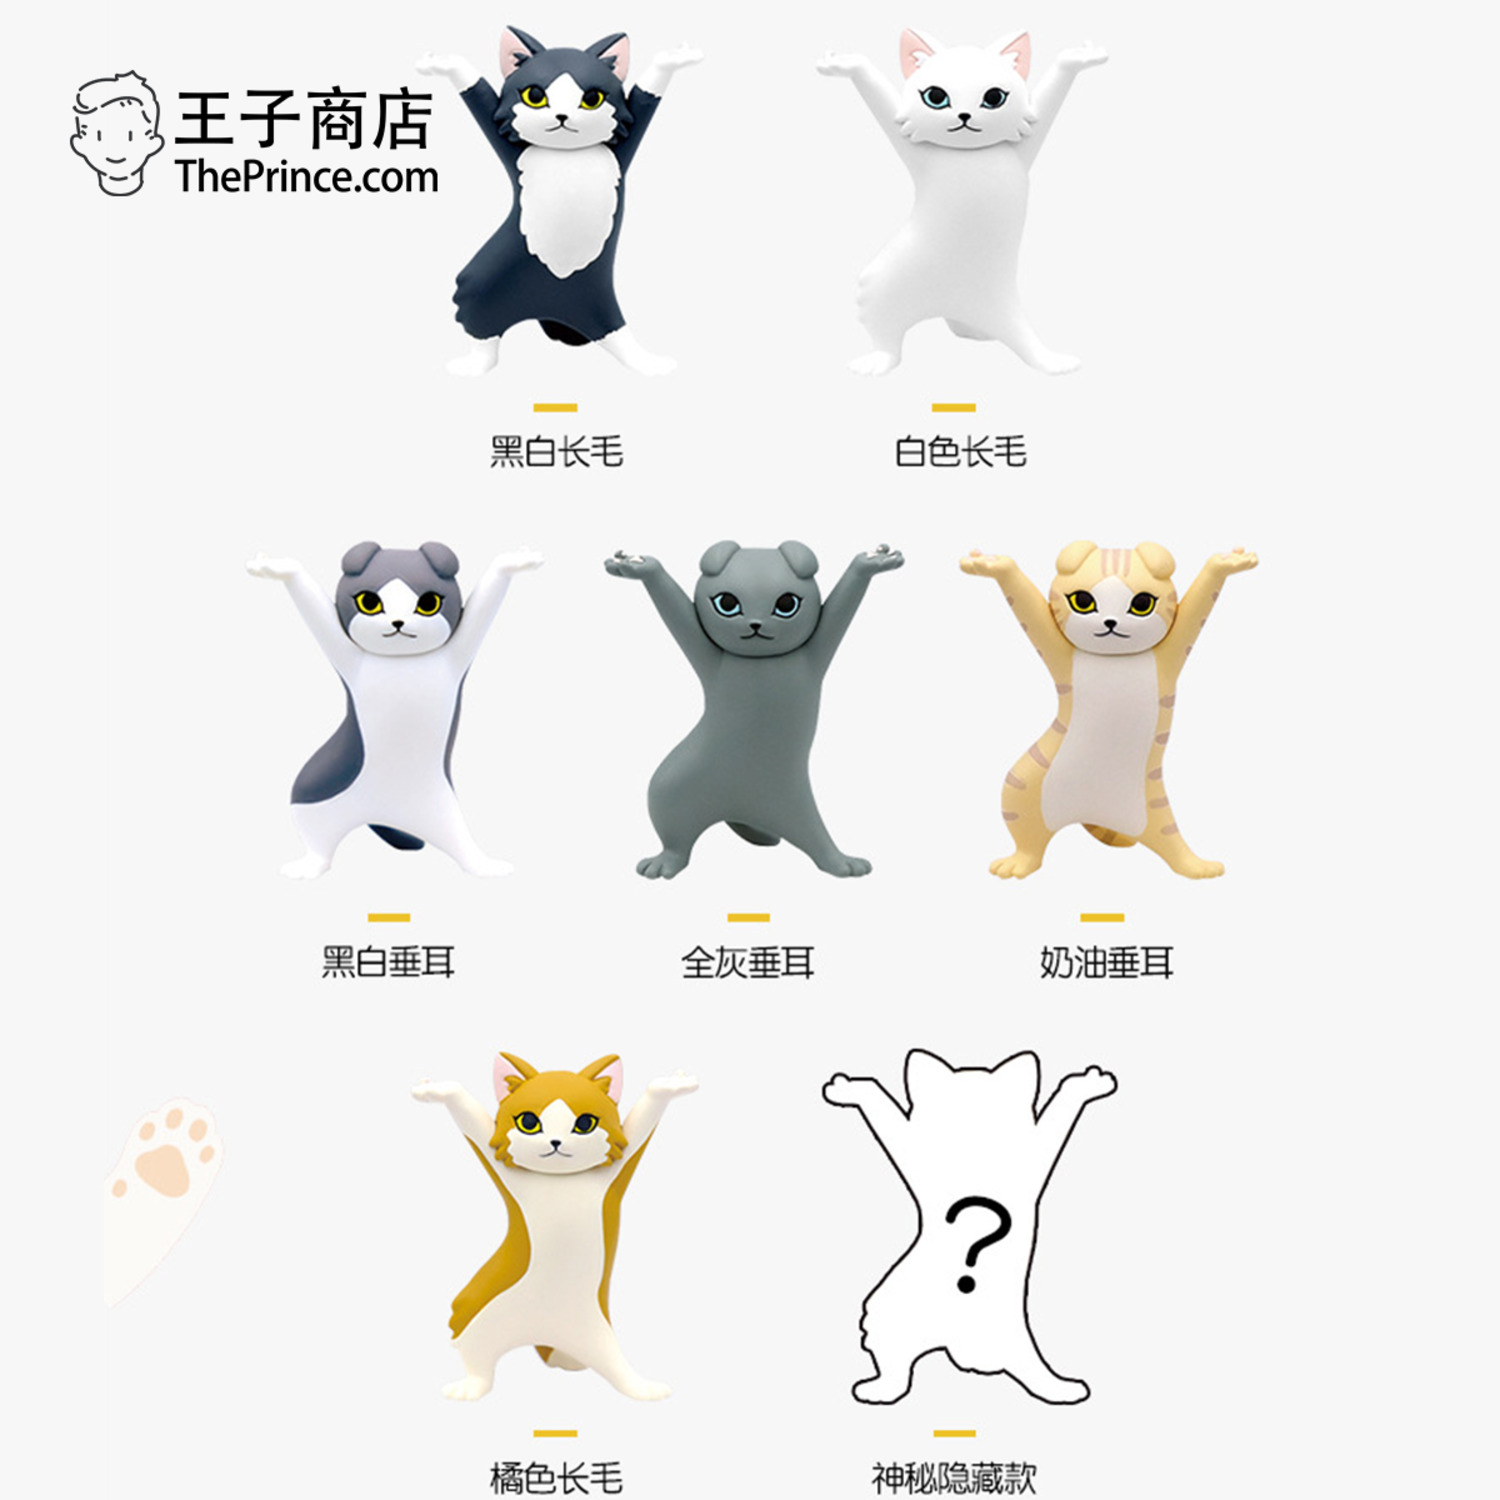 王子商店日本猫咪盲盒置物架妖娆猫猫笔架垂耳长毛猫可爱公仔礼物-2